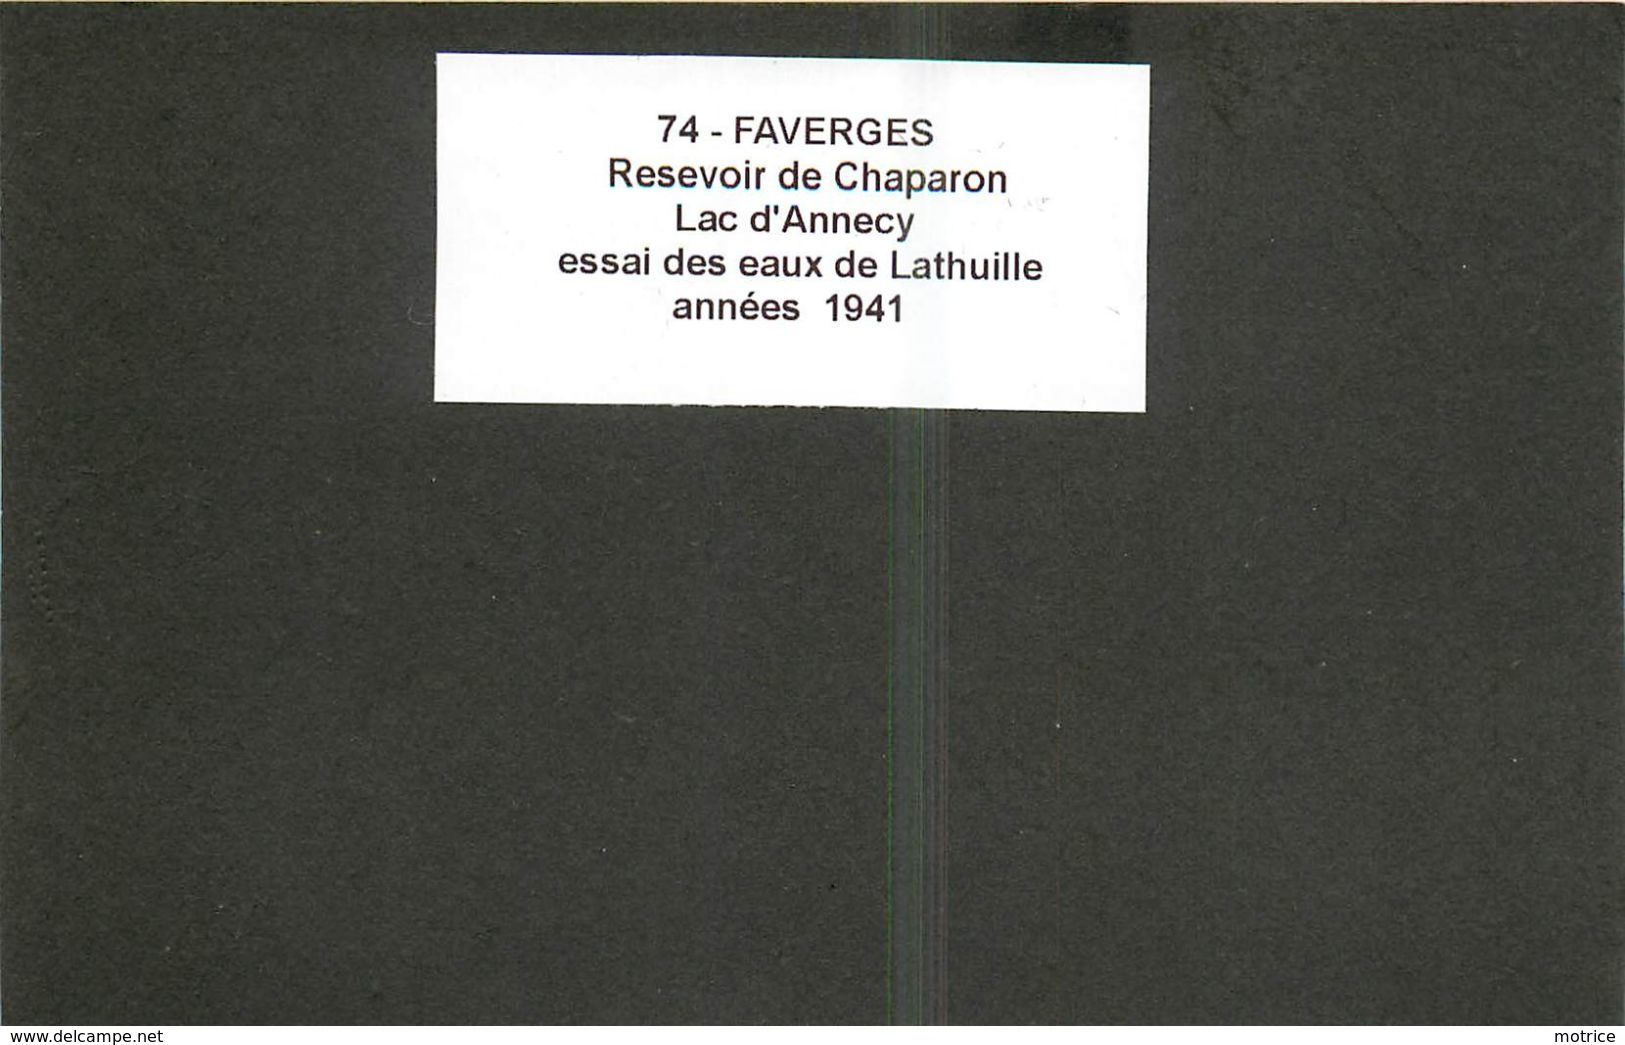 FAVERGES (74)- Réservoir De Chaparon,essai Des Eaux De Lathuille En 1941,Photo Format 11,2x6,8cm. - Lieux